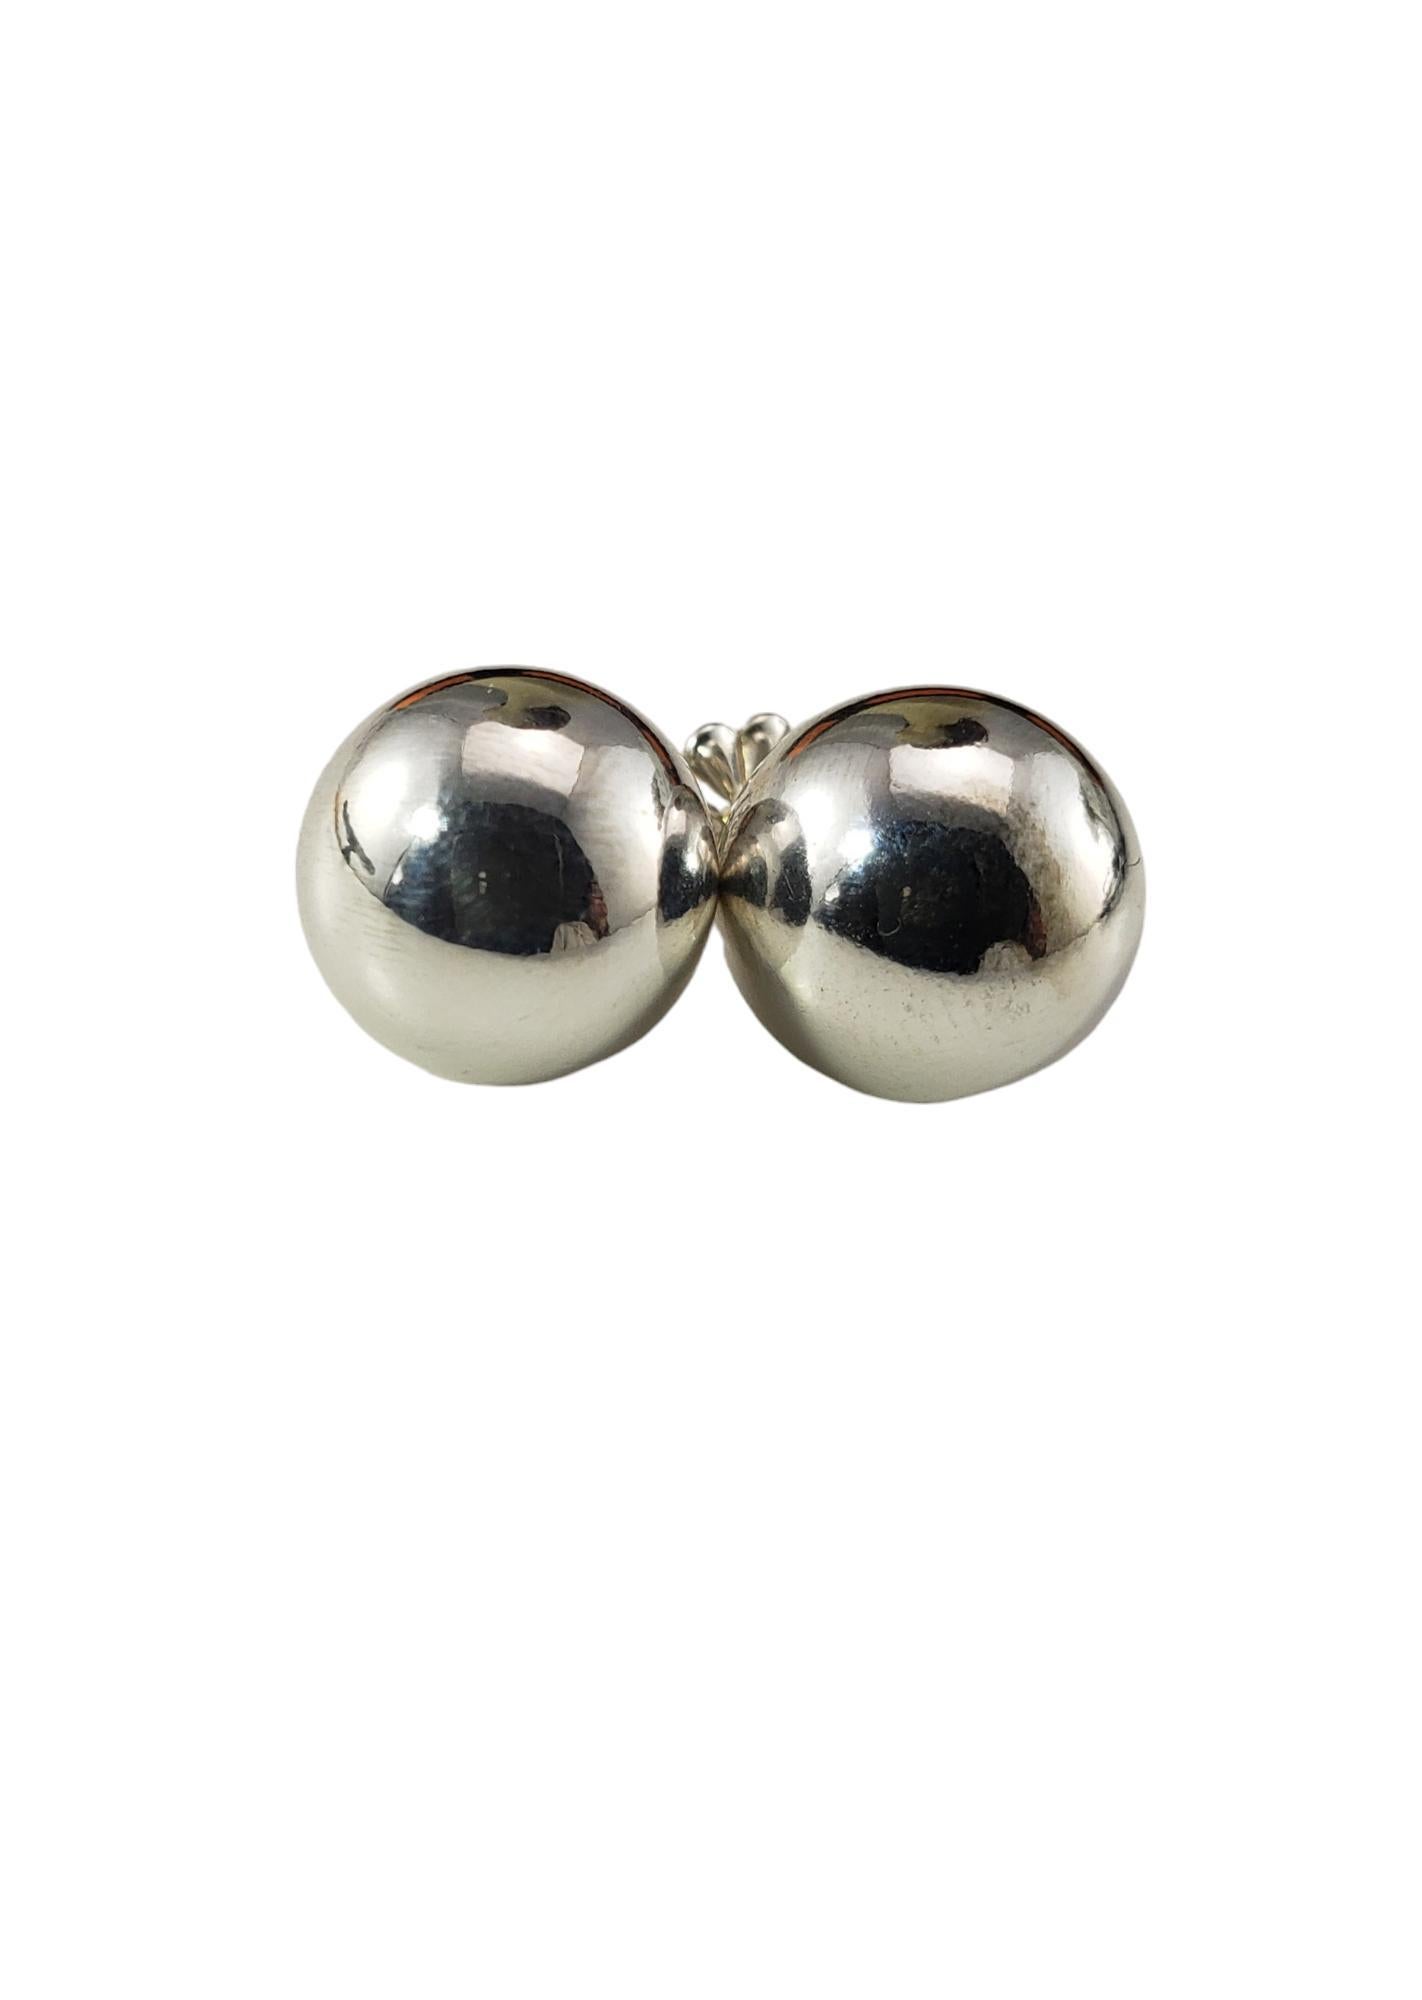 Tiffany & Co. Sterling Silber Kugel-Ohrringe

Diese eleganten Kugelohrringe von Tiffany & Co. sind aus klassischem Sterlingsilber gefertigt.  

Breite: 10 mm.  Push-Back-Verschlüsse.

Passendes Armband: #17162
Passende Halskette: #17161

Größe: 10